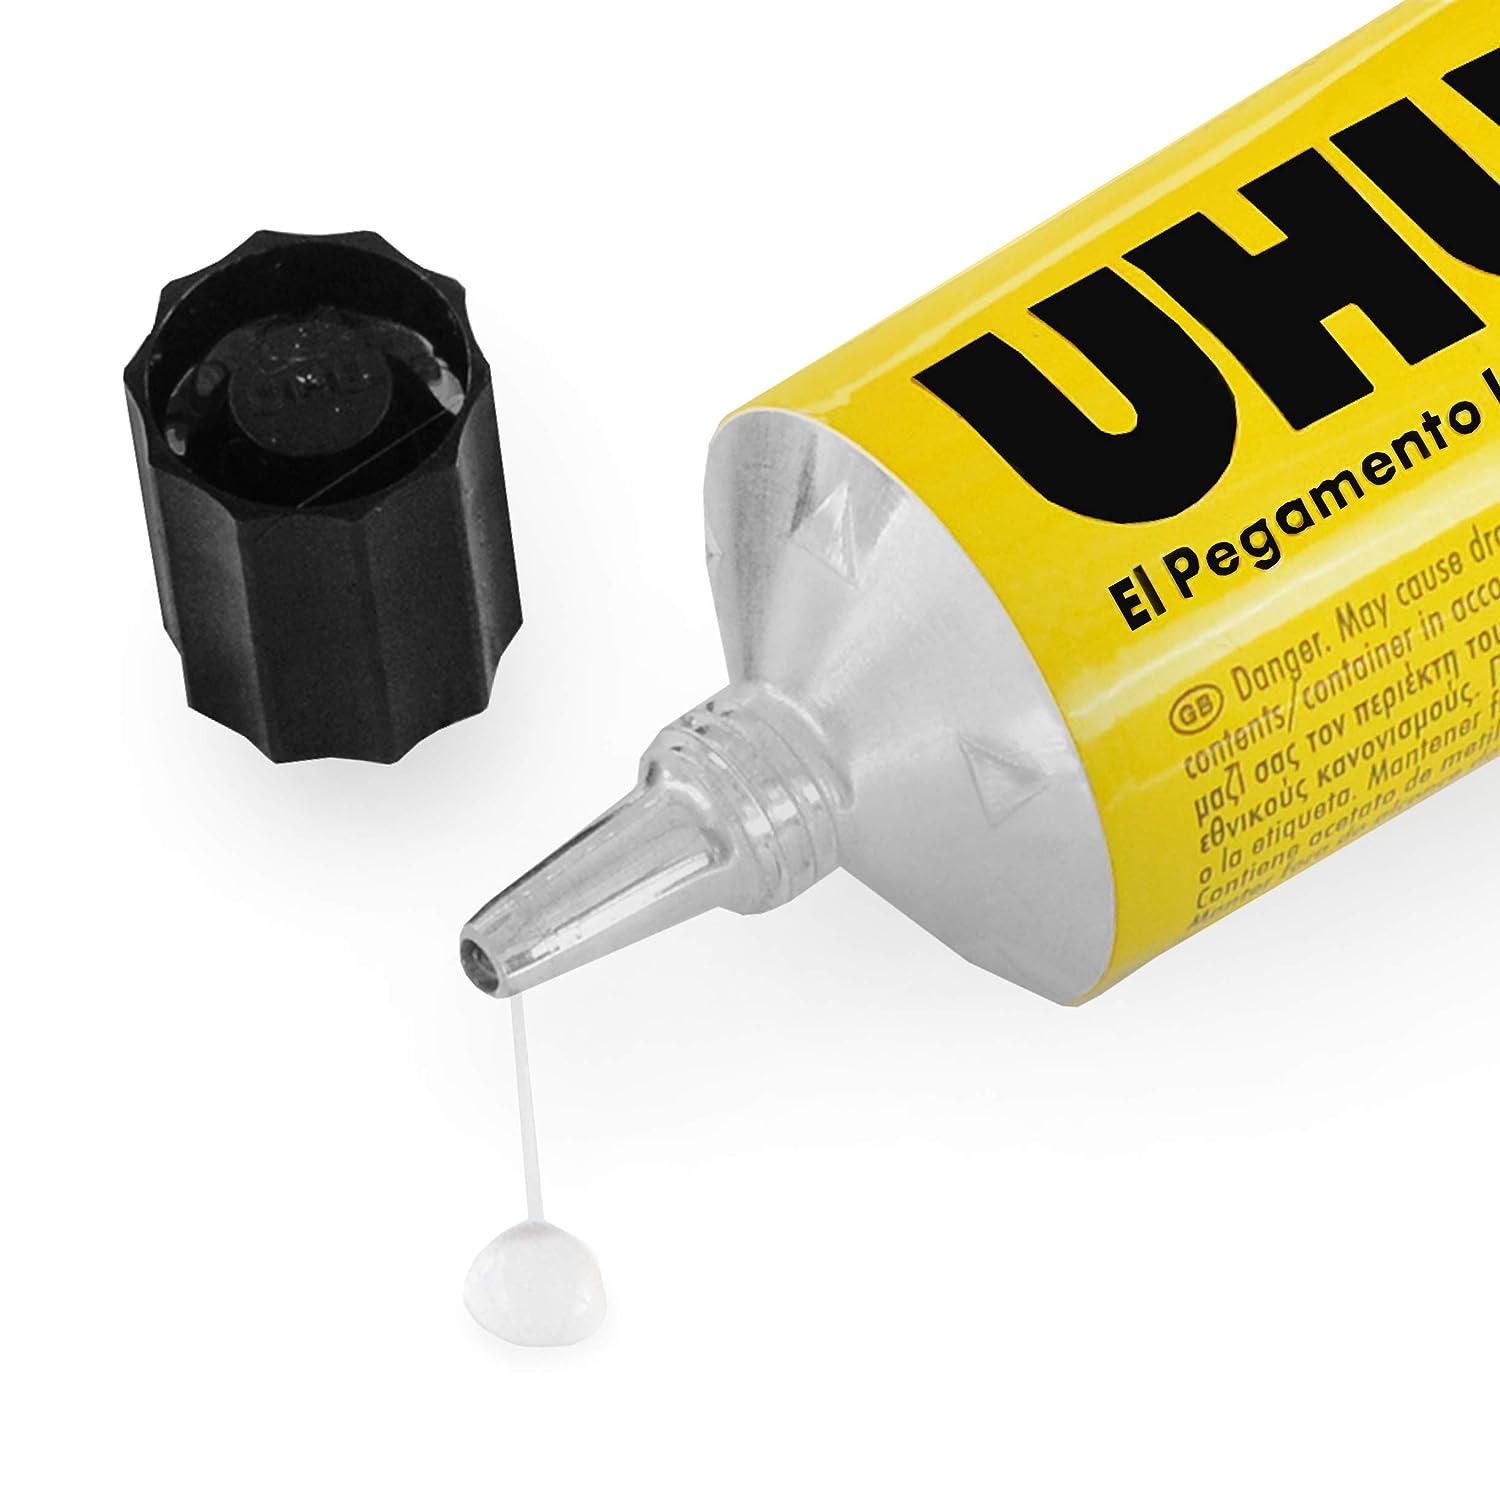 UHU All Purpose Adhesive 60 Ml